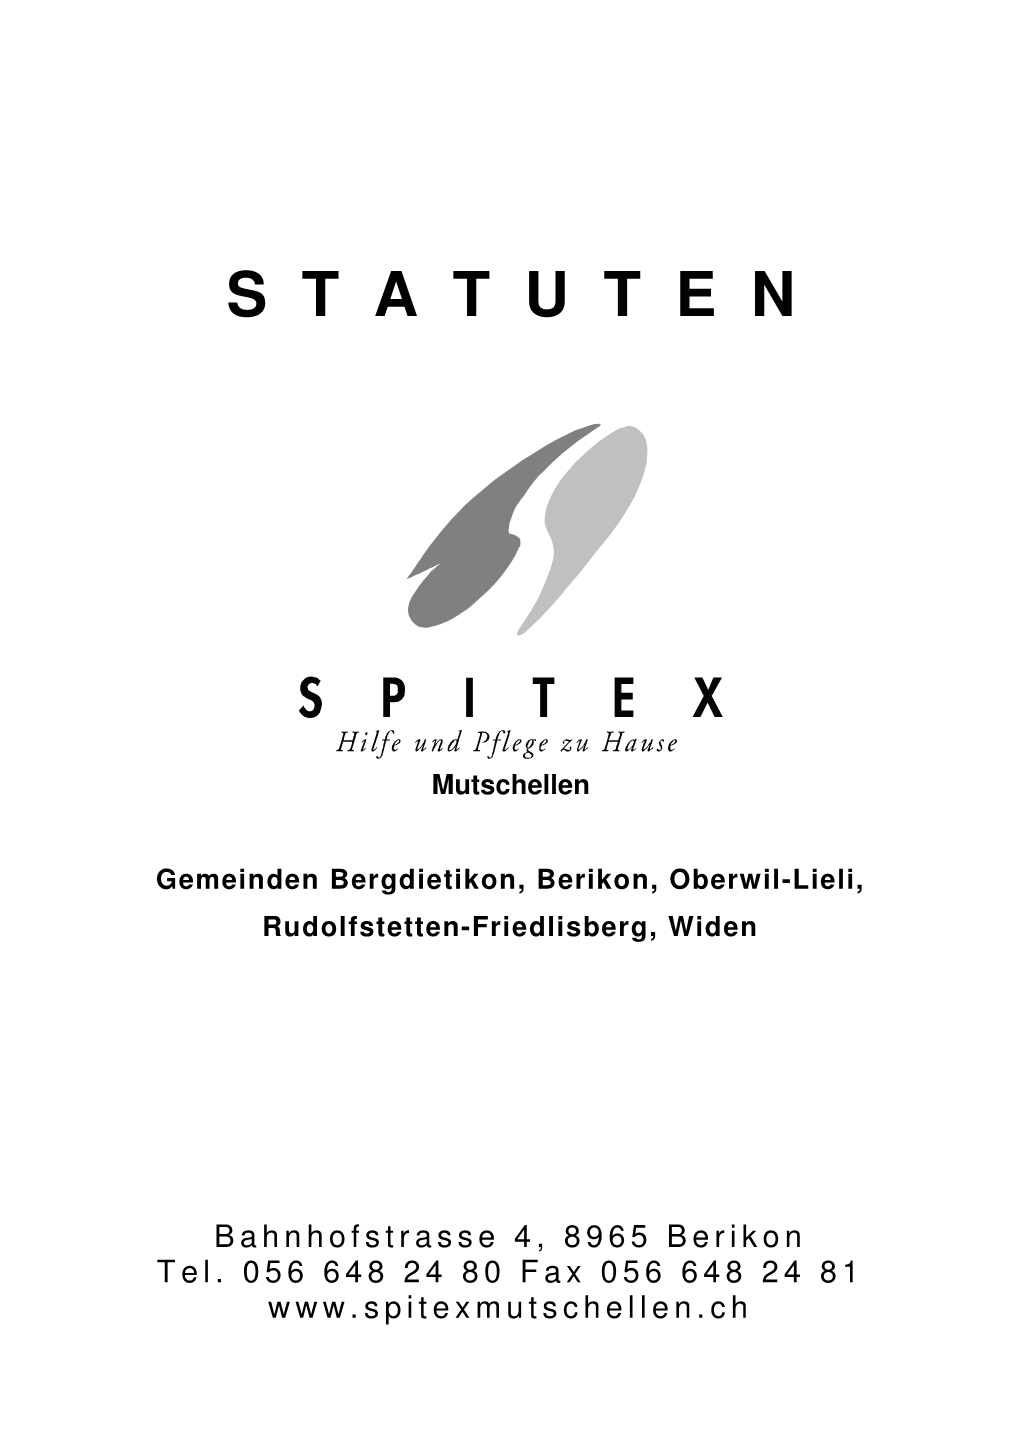 Statuten Spitex Mutschellen 2013